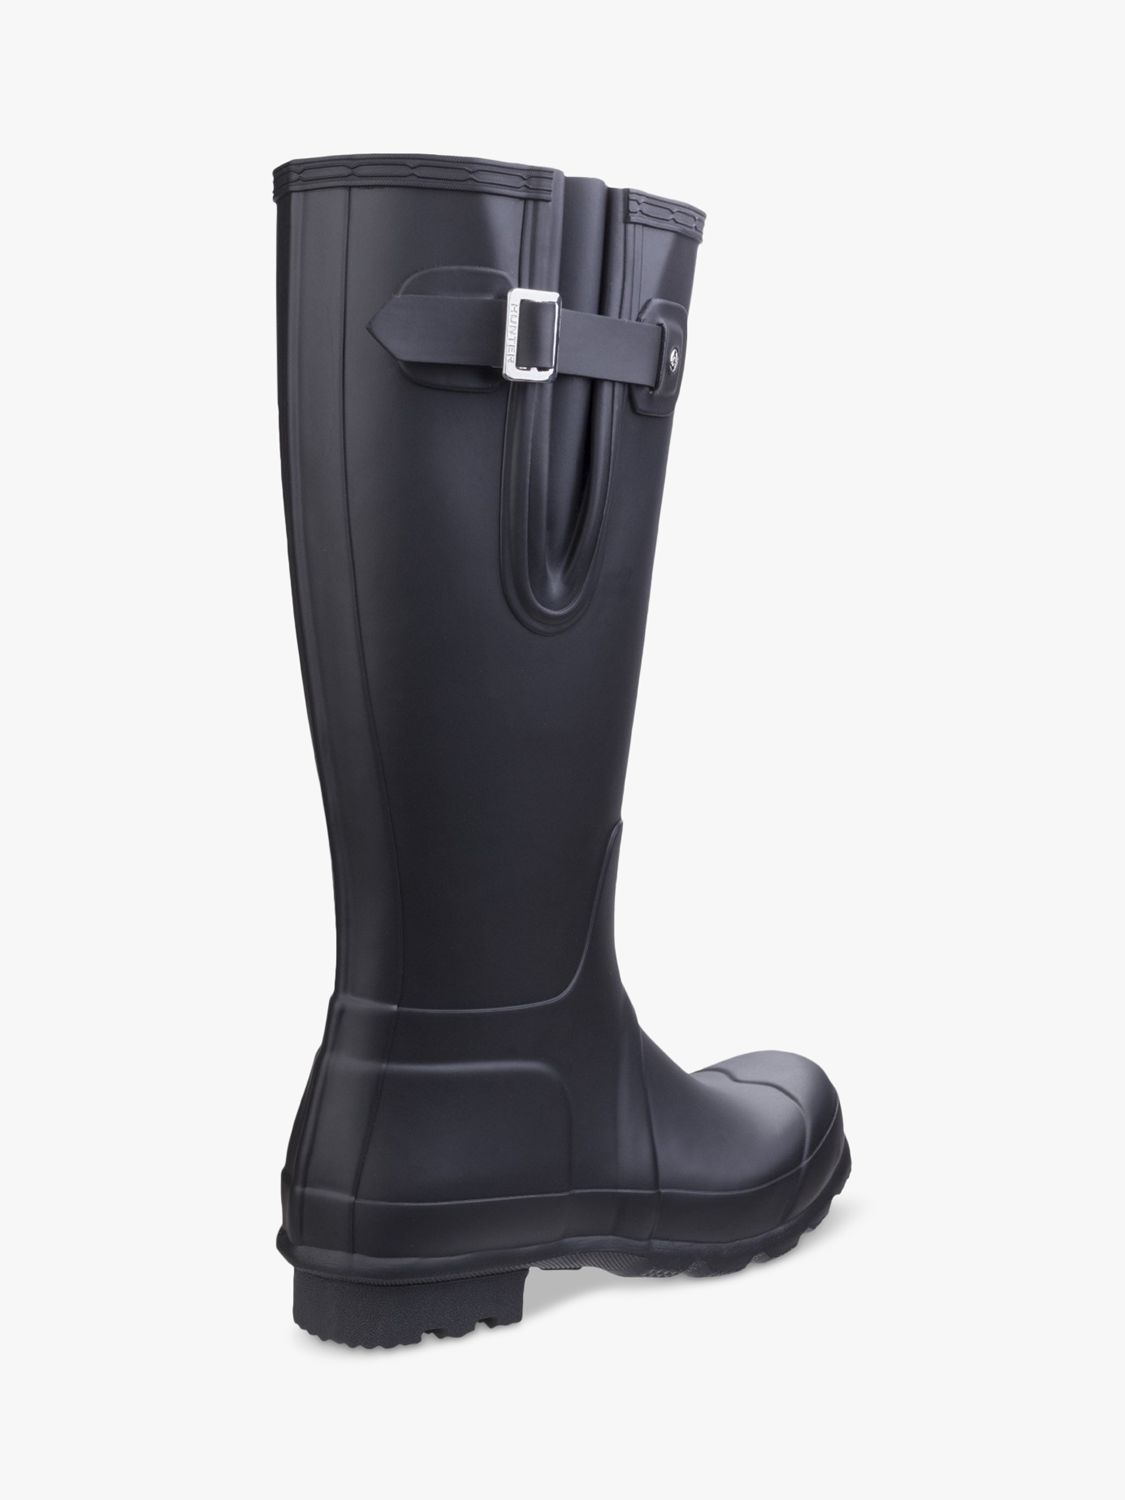 Hunter Original Tall Side Adjustable Wellington Boots, Black, 6